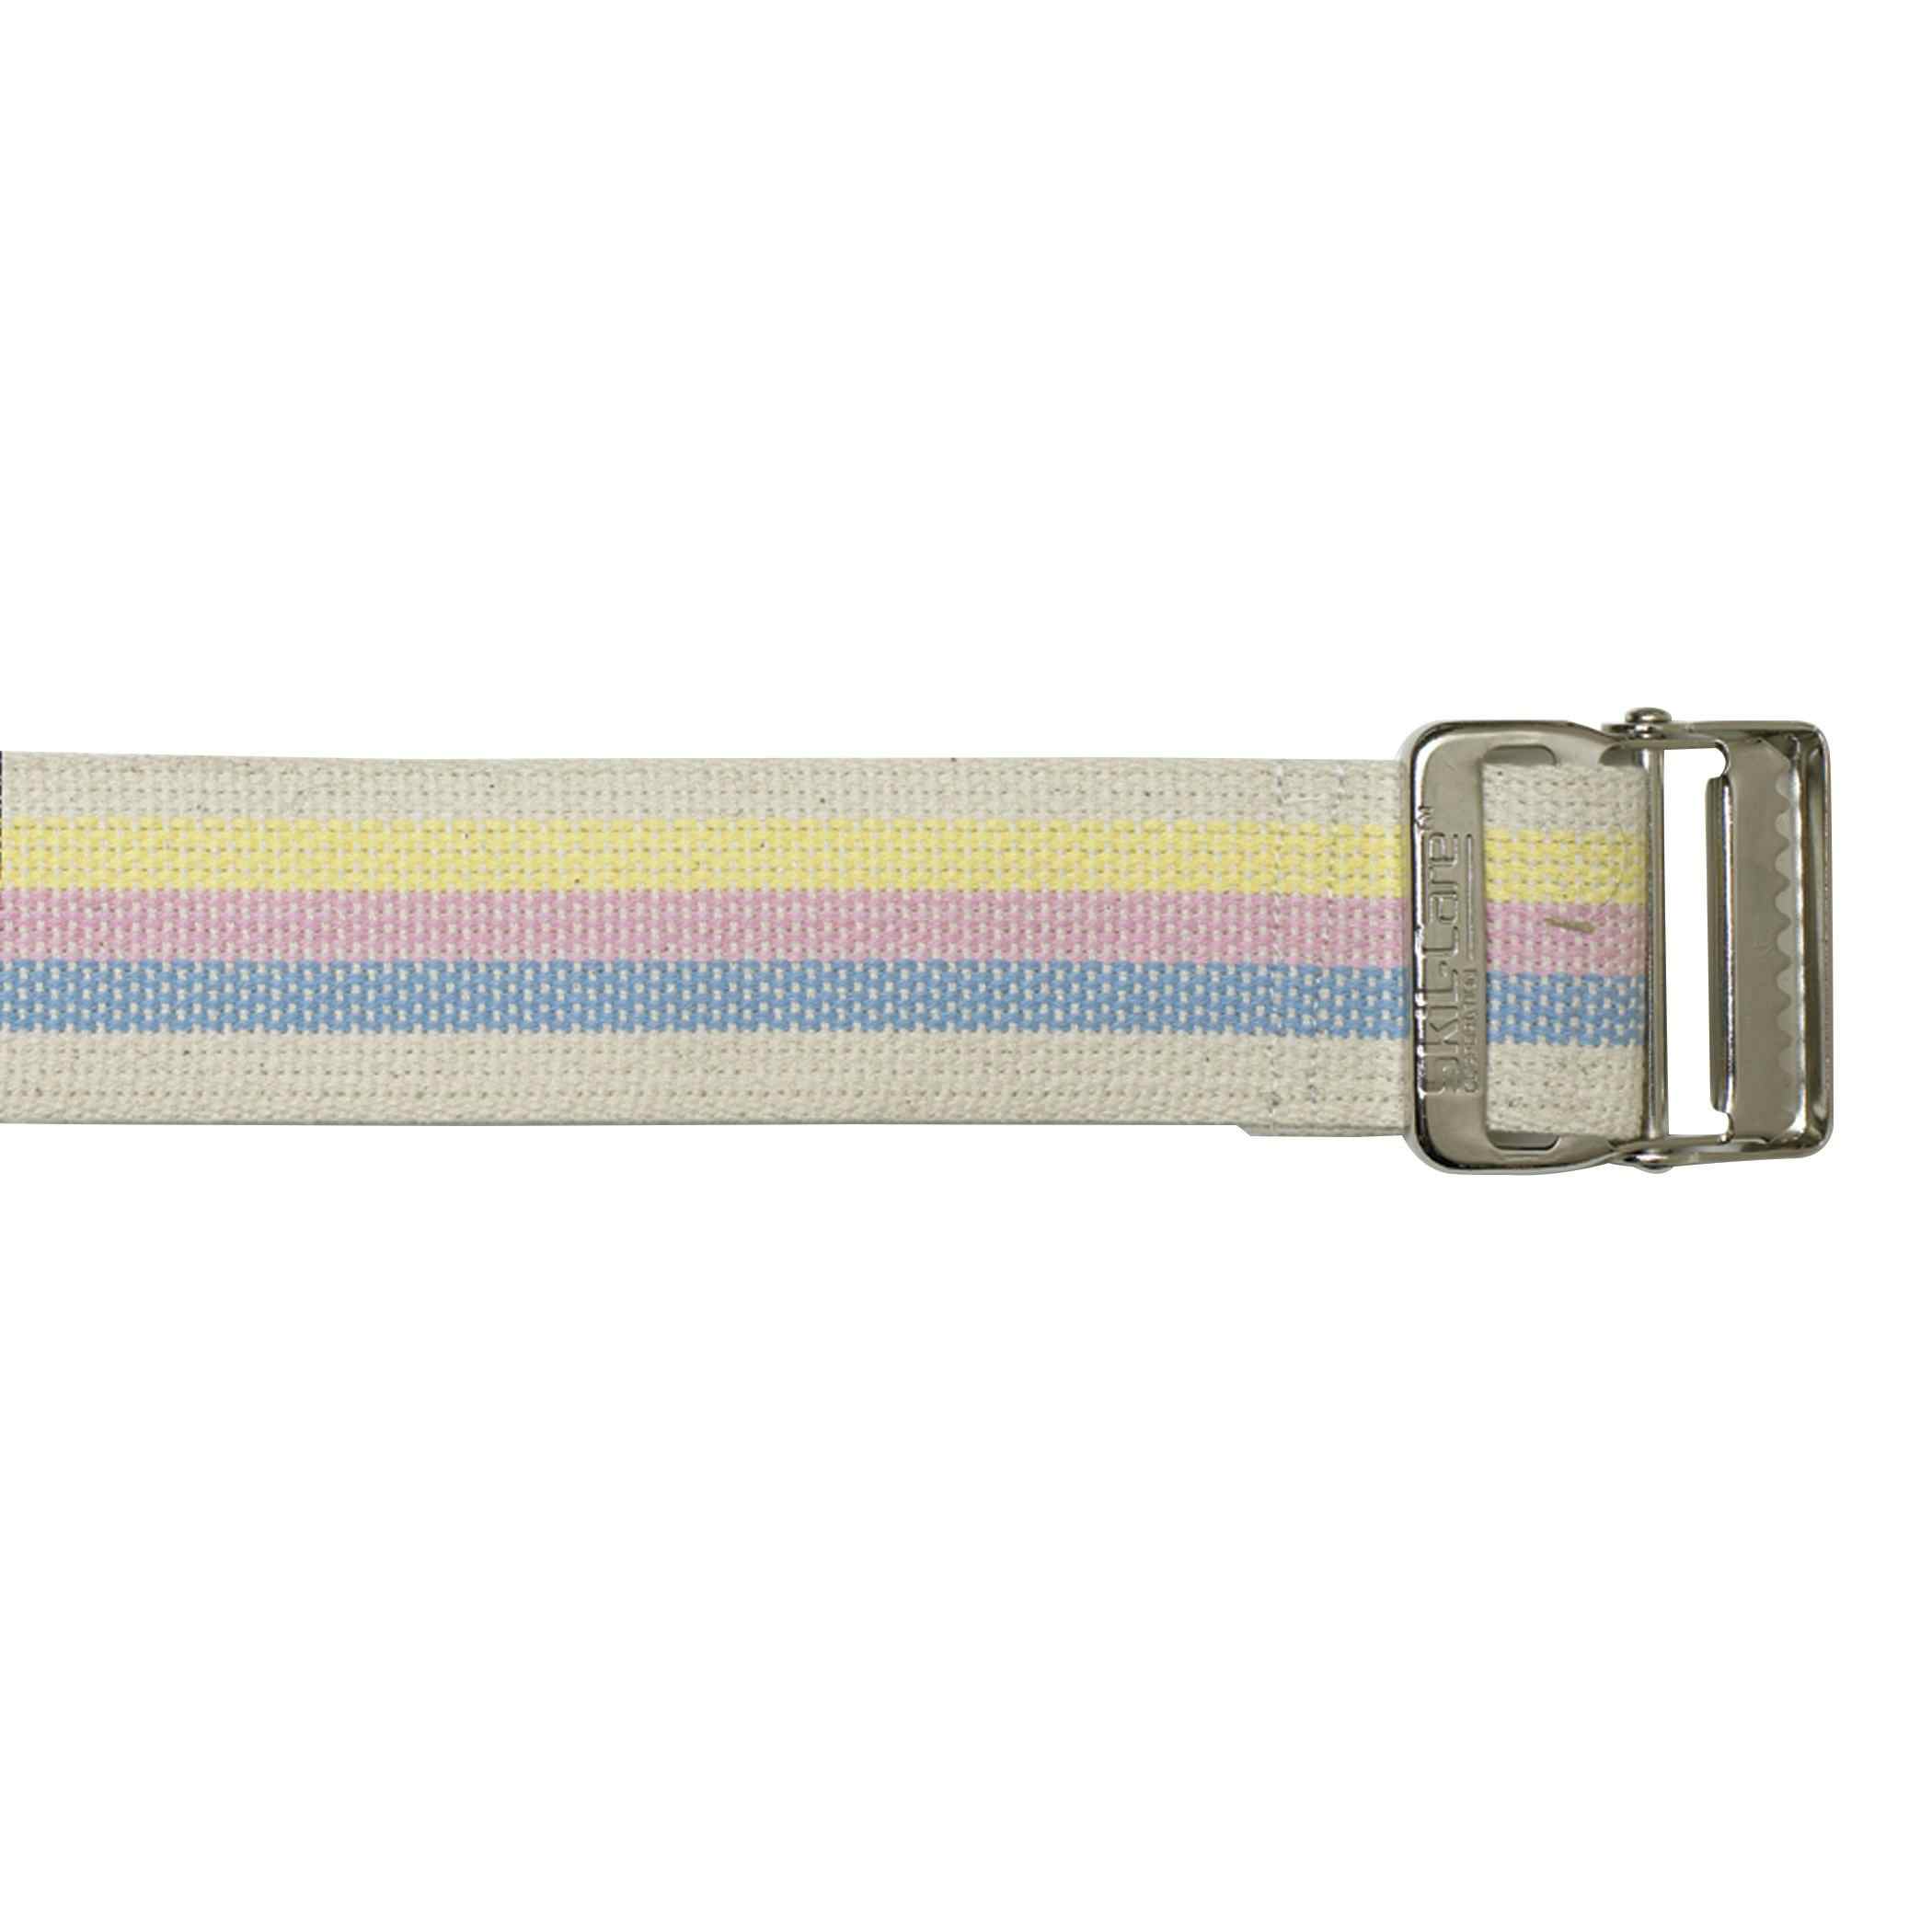 SkiL-Care Cotton Gait Belt, Multiple Colors, 252072, 72 Inch - Pastel Stripe